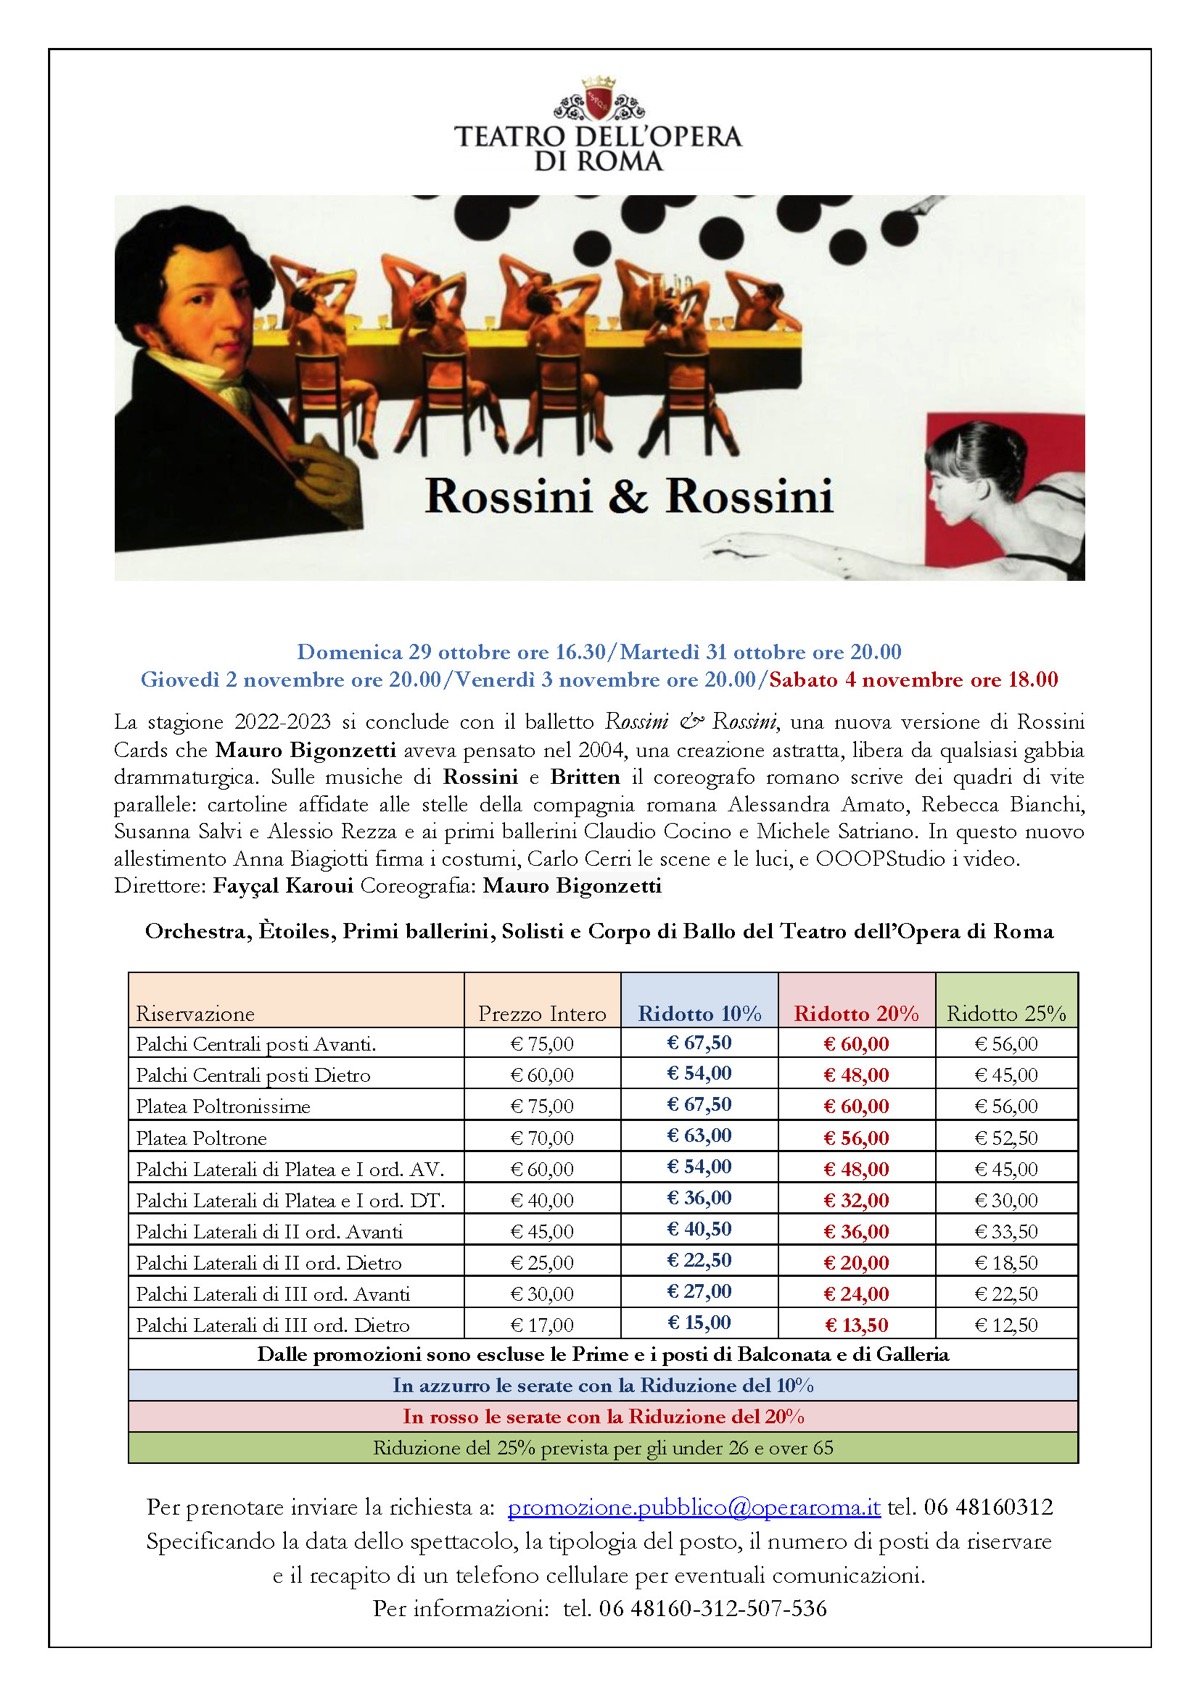 Teatro dell'Opera di Roma - Balletto Rossini & Rossini